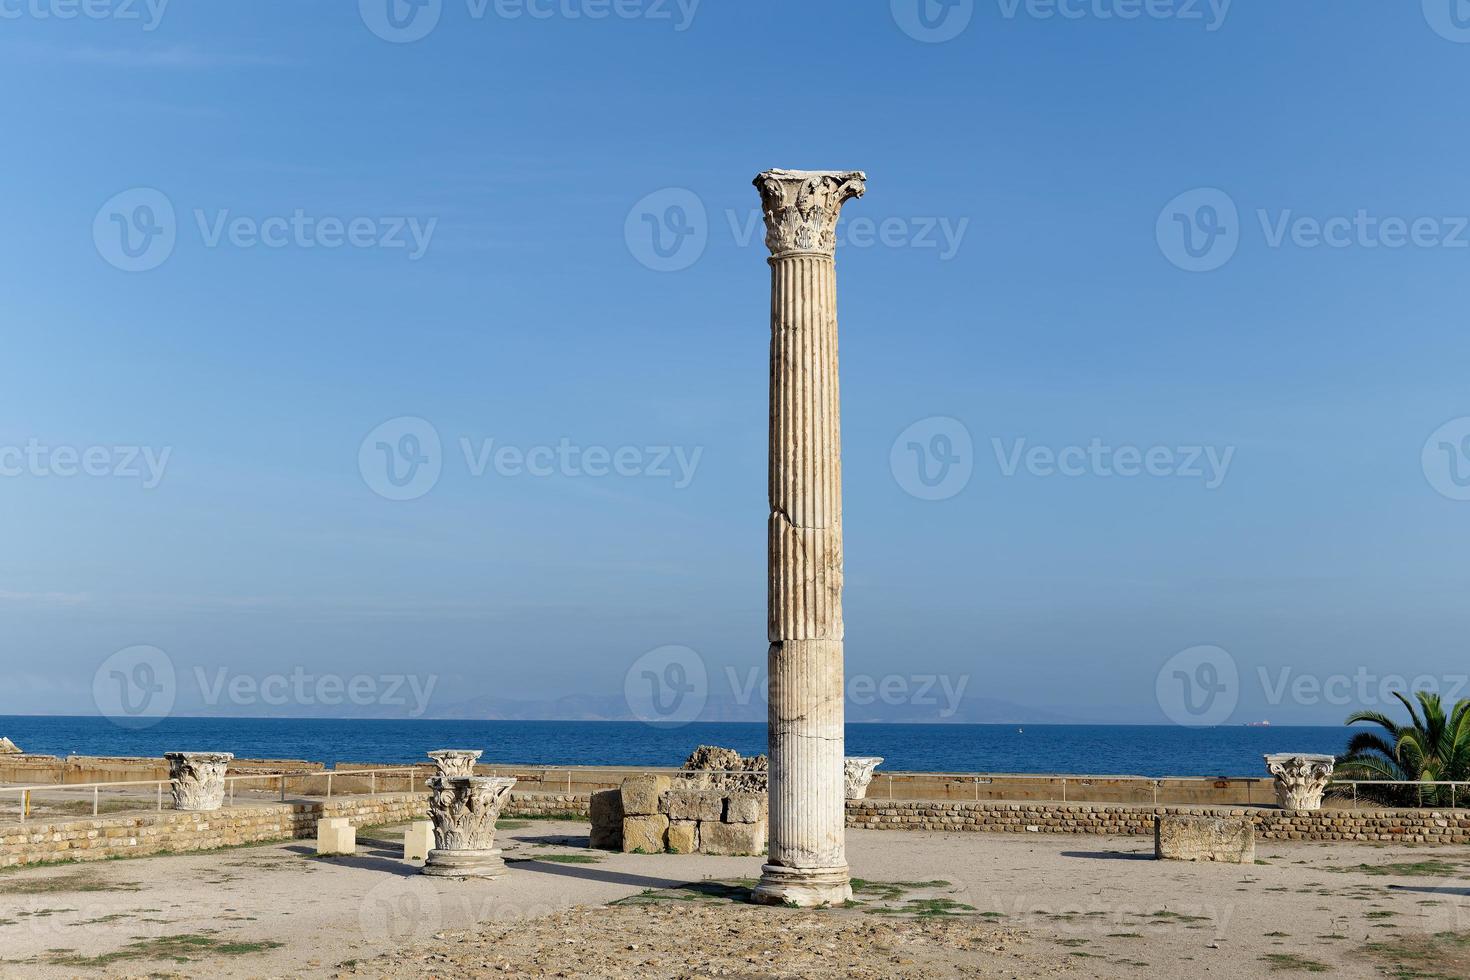 visie van de historisch mijlpaal de baden van antoninus in Carthago , tunesië. UNESCO wereld erfgoed plaats. archeologisch plaats van Carthago. plaats van historisch interesse. oude ruïnes. foto